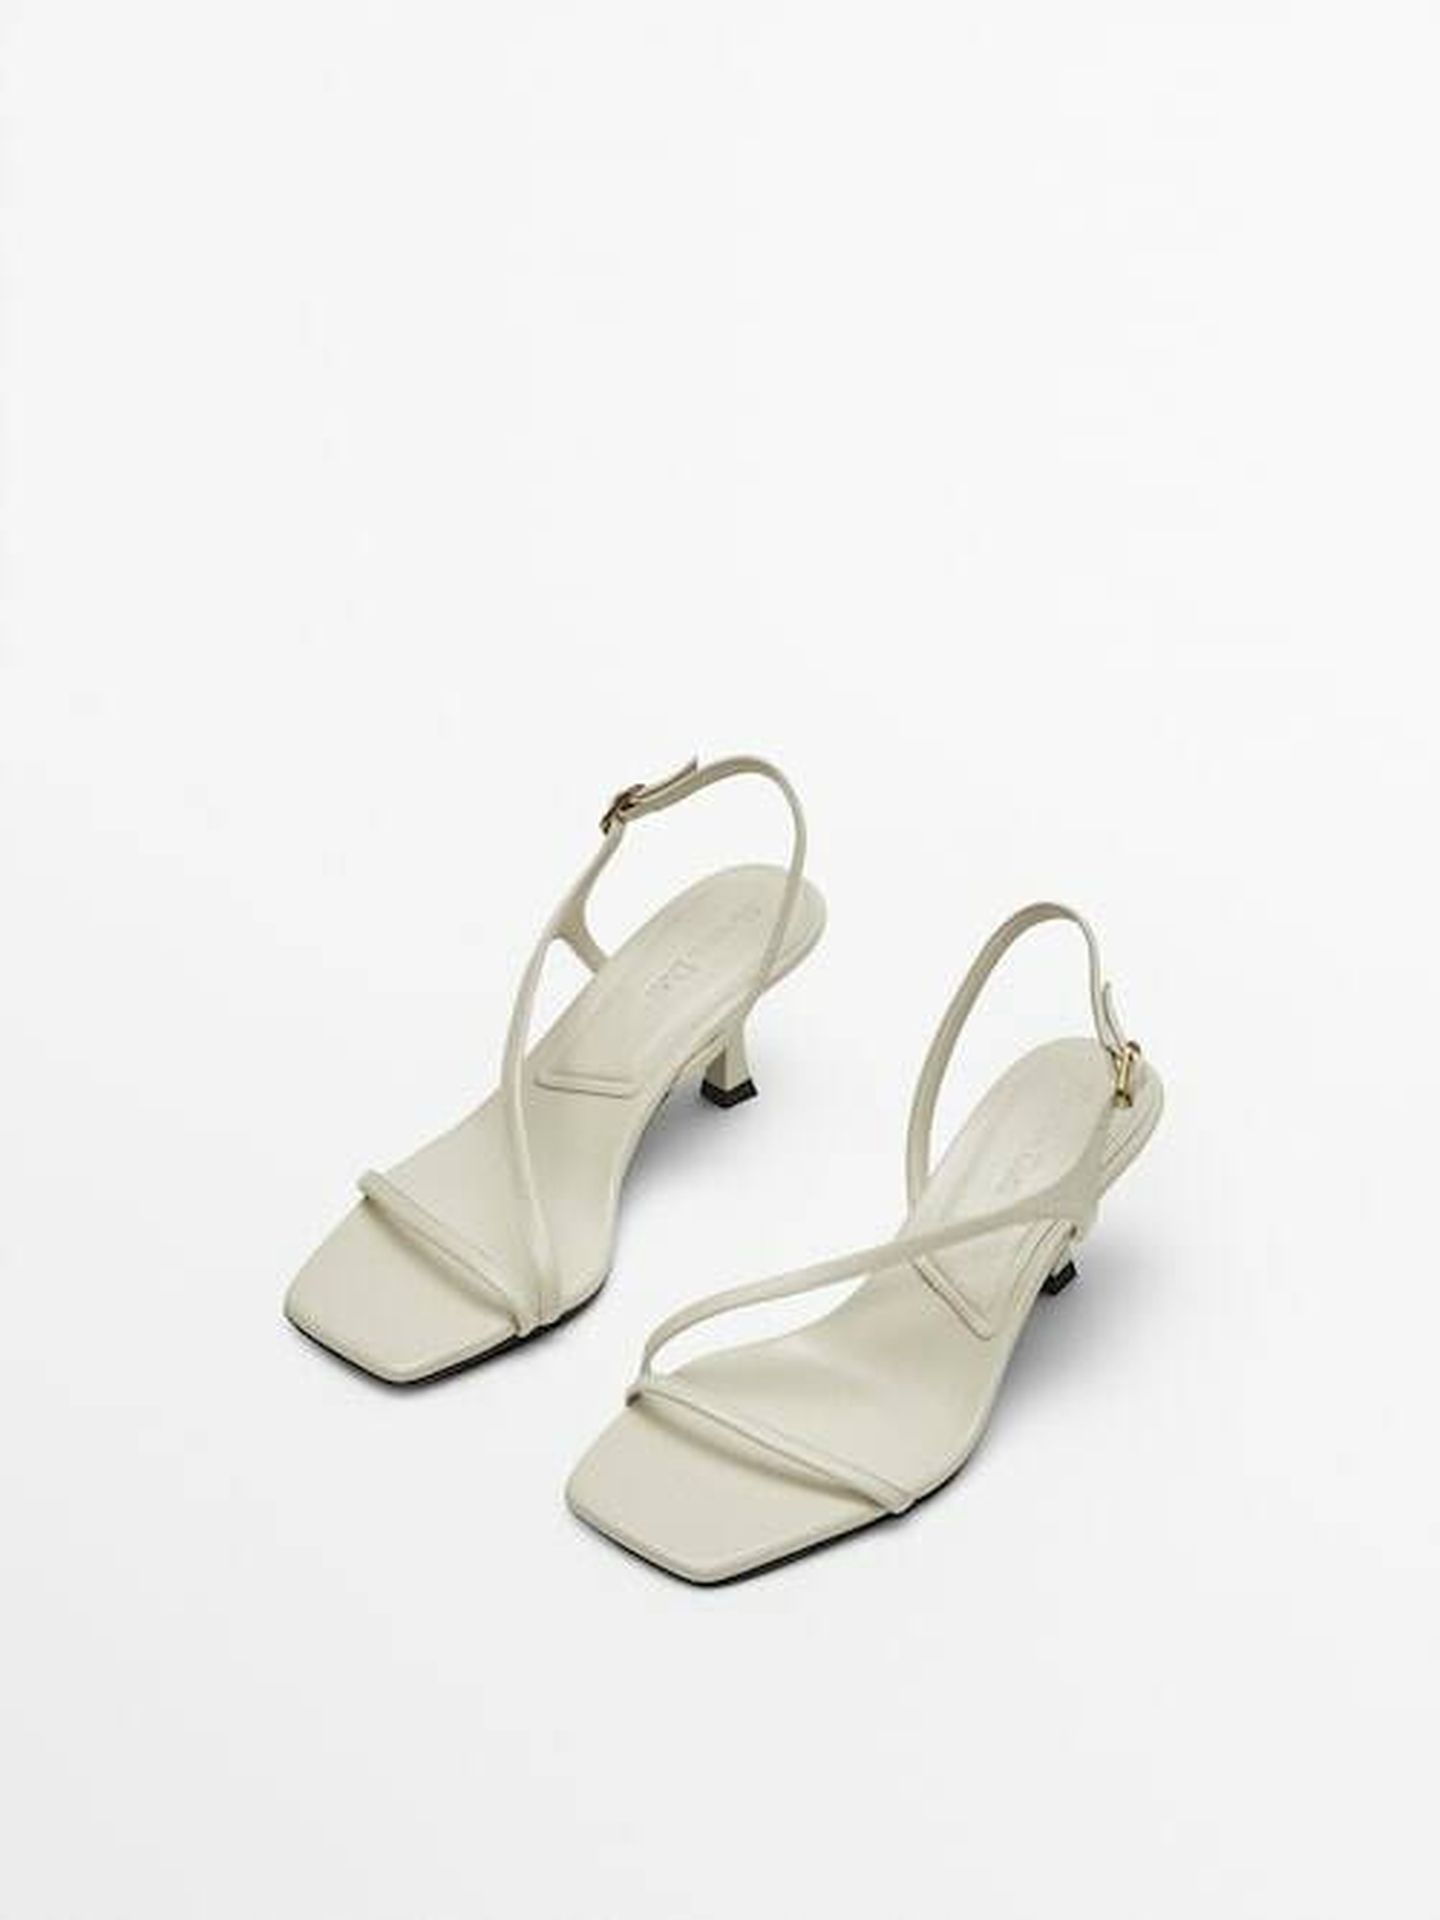 Las sandalias de las rebajas Massimo Dutti. (Cortesía)